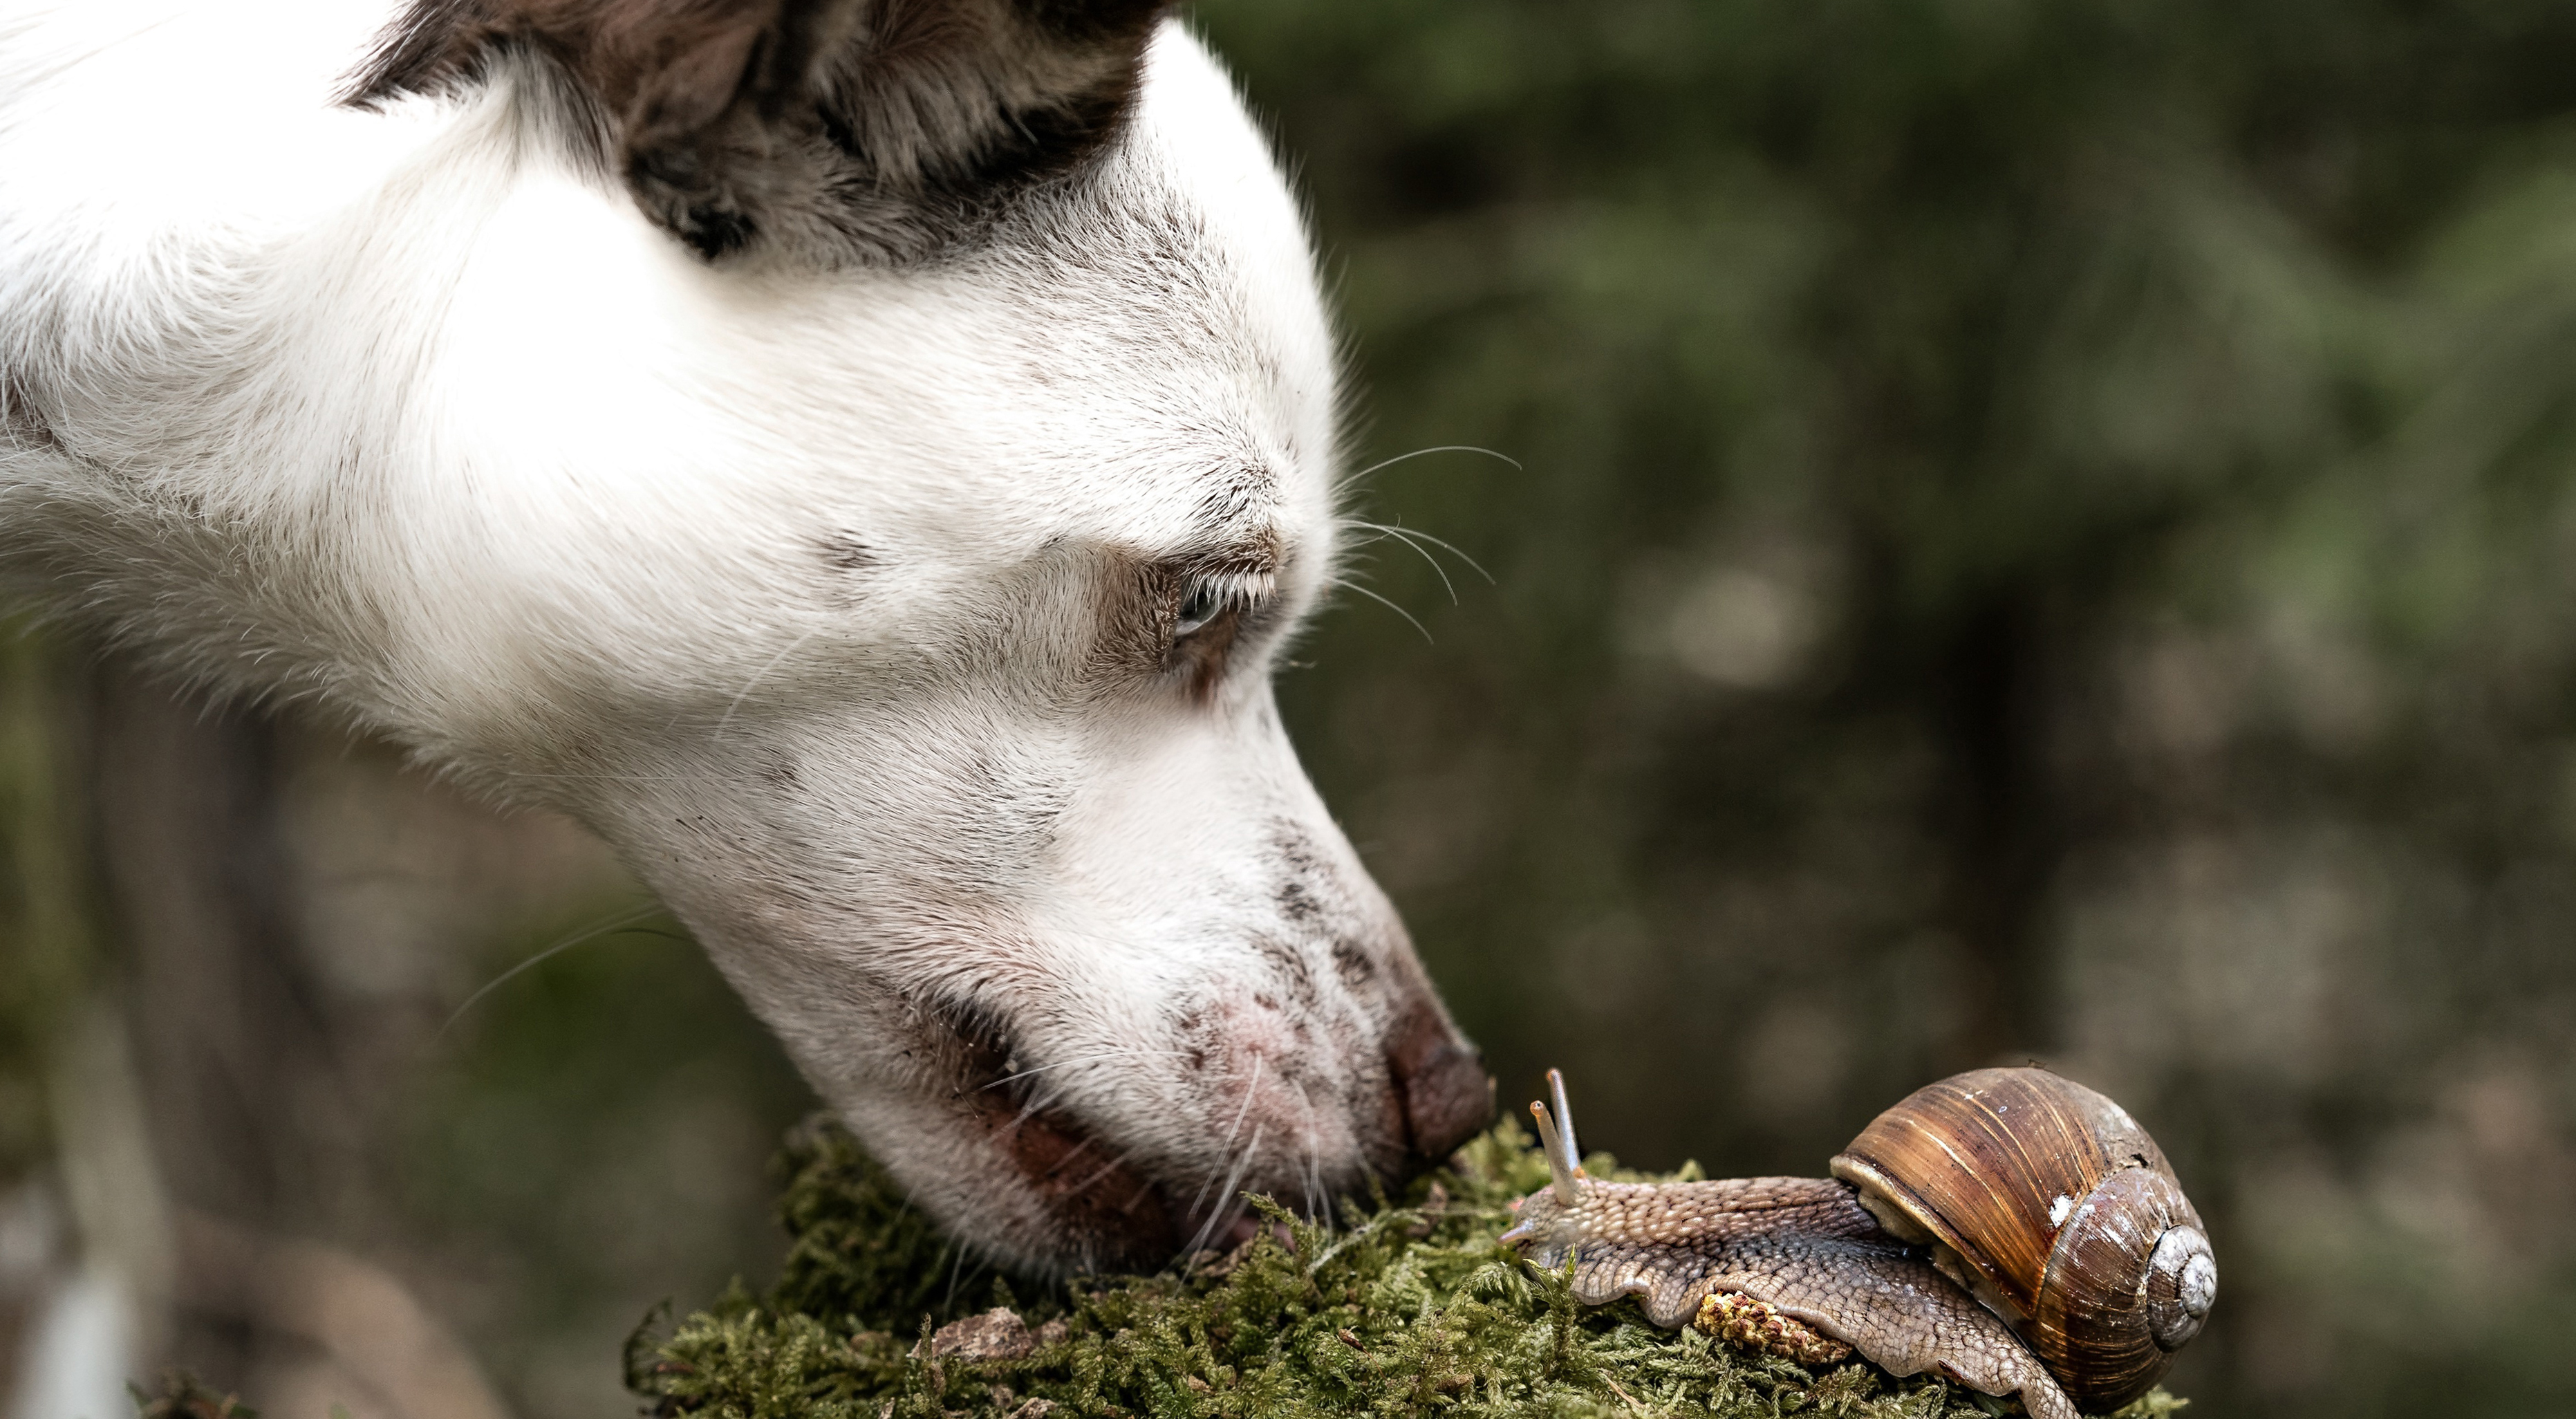 is it bad if a dog eats a slug